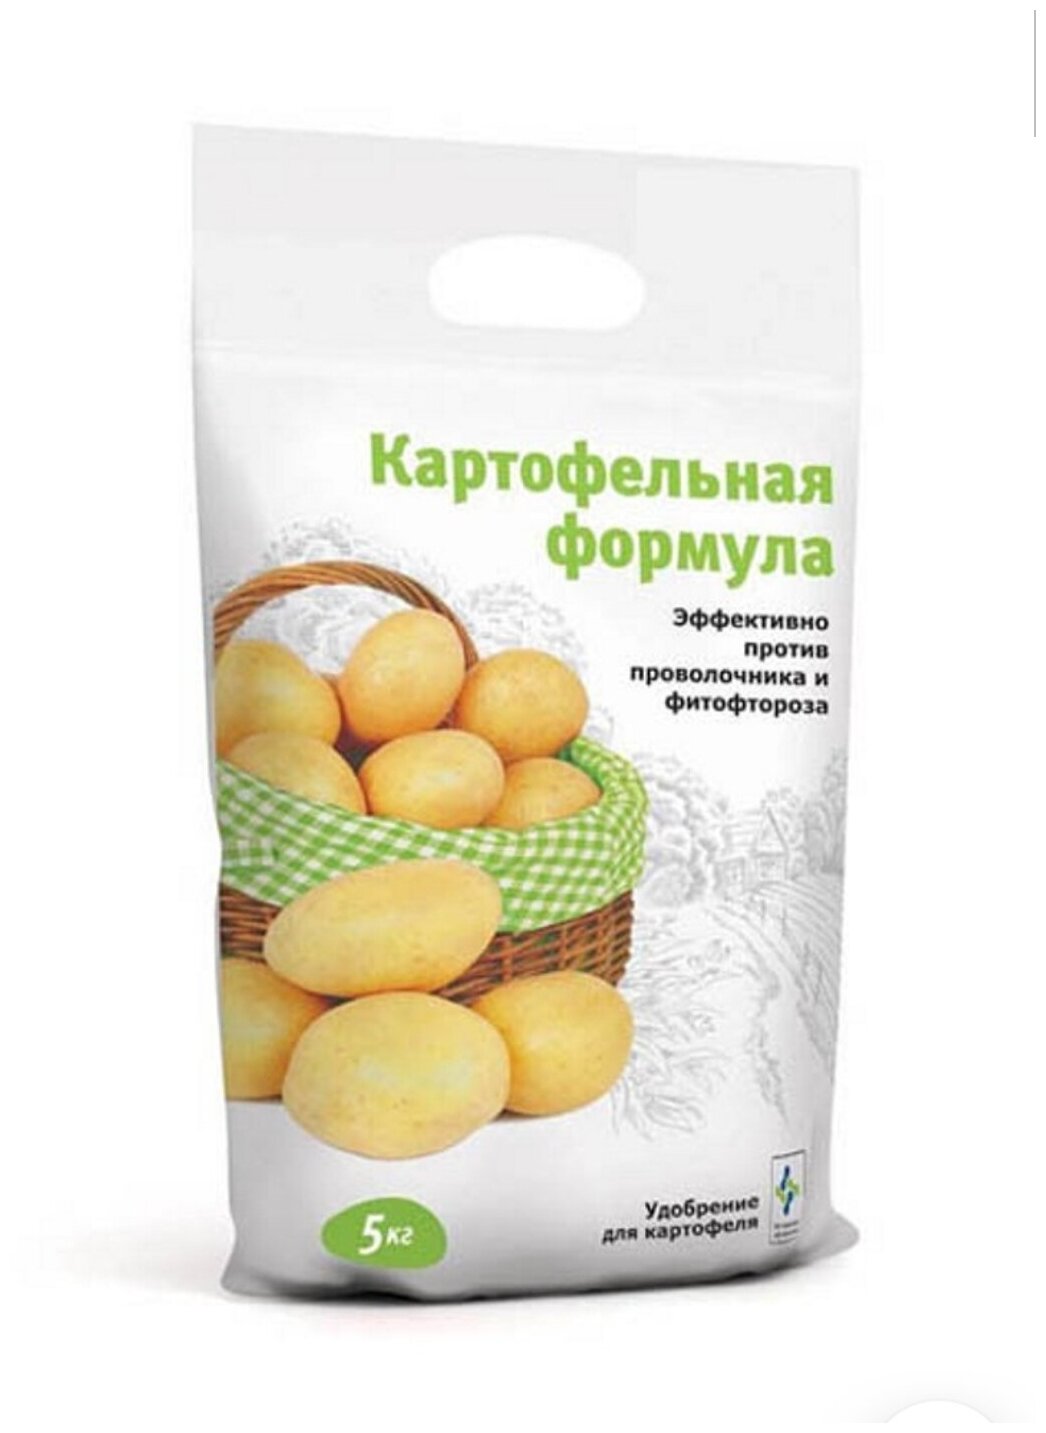 Удобрения для картофеля 5кг Картофельная формула